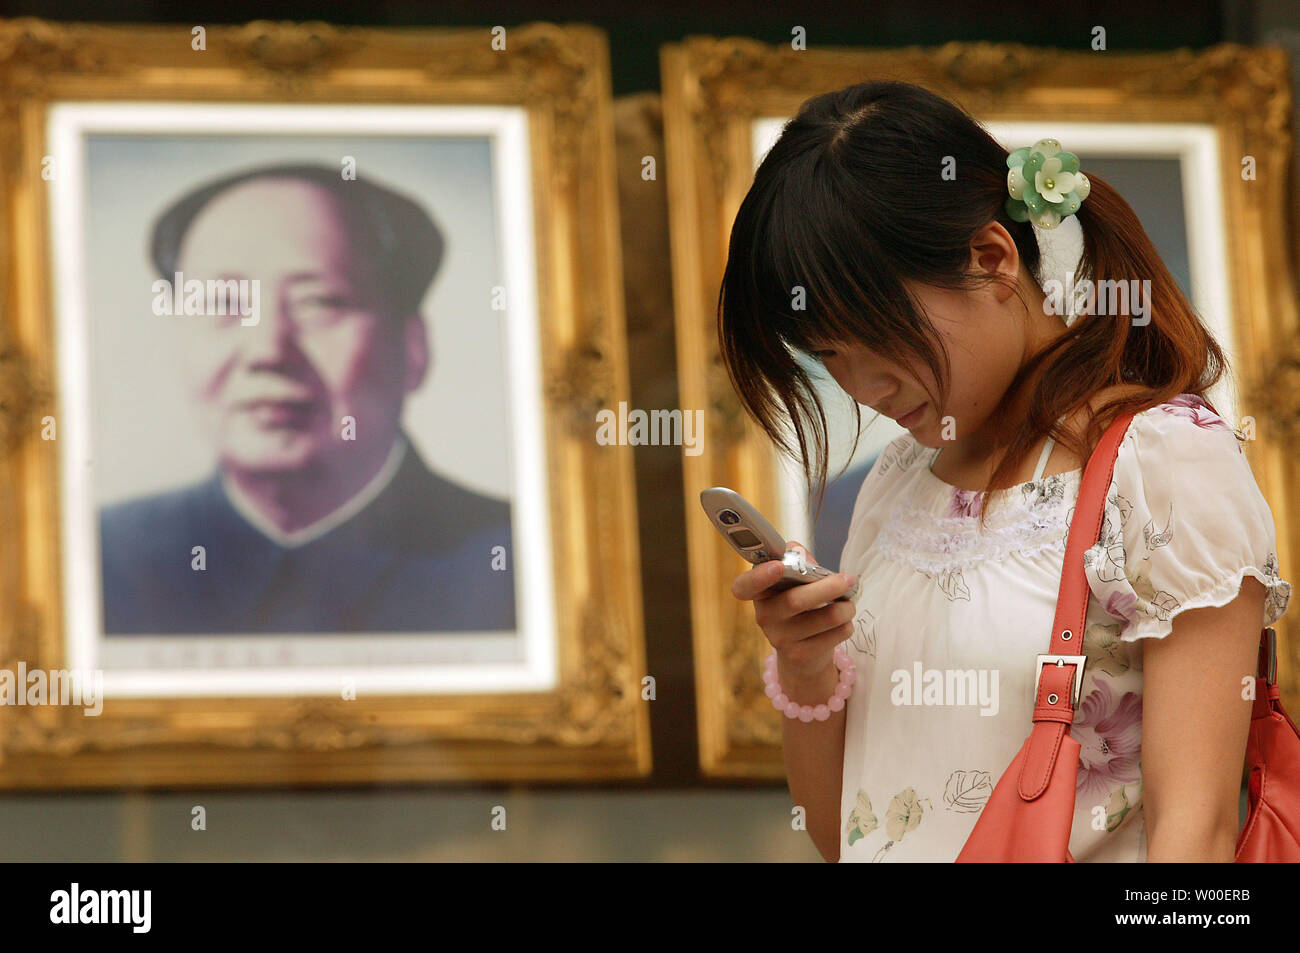 Una giovane ragazza cinese sorriso come lei legge un messaggio di testo sul suo telefono cellulare, nei pressi di un ritratto della Cina al fine timoniere Mao Zedong, nel centro di Pechino del 12 giugno 2006. Molto è cambiato in tutta la Cina poiché i giorni di Mao la rivoluzione culturale e il regime comunista. (UPI foto/Stephen rasoio) Foto Stock